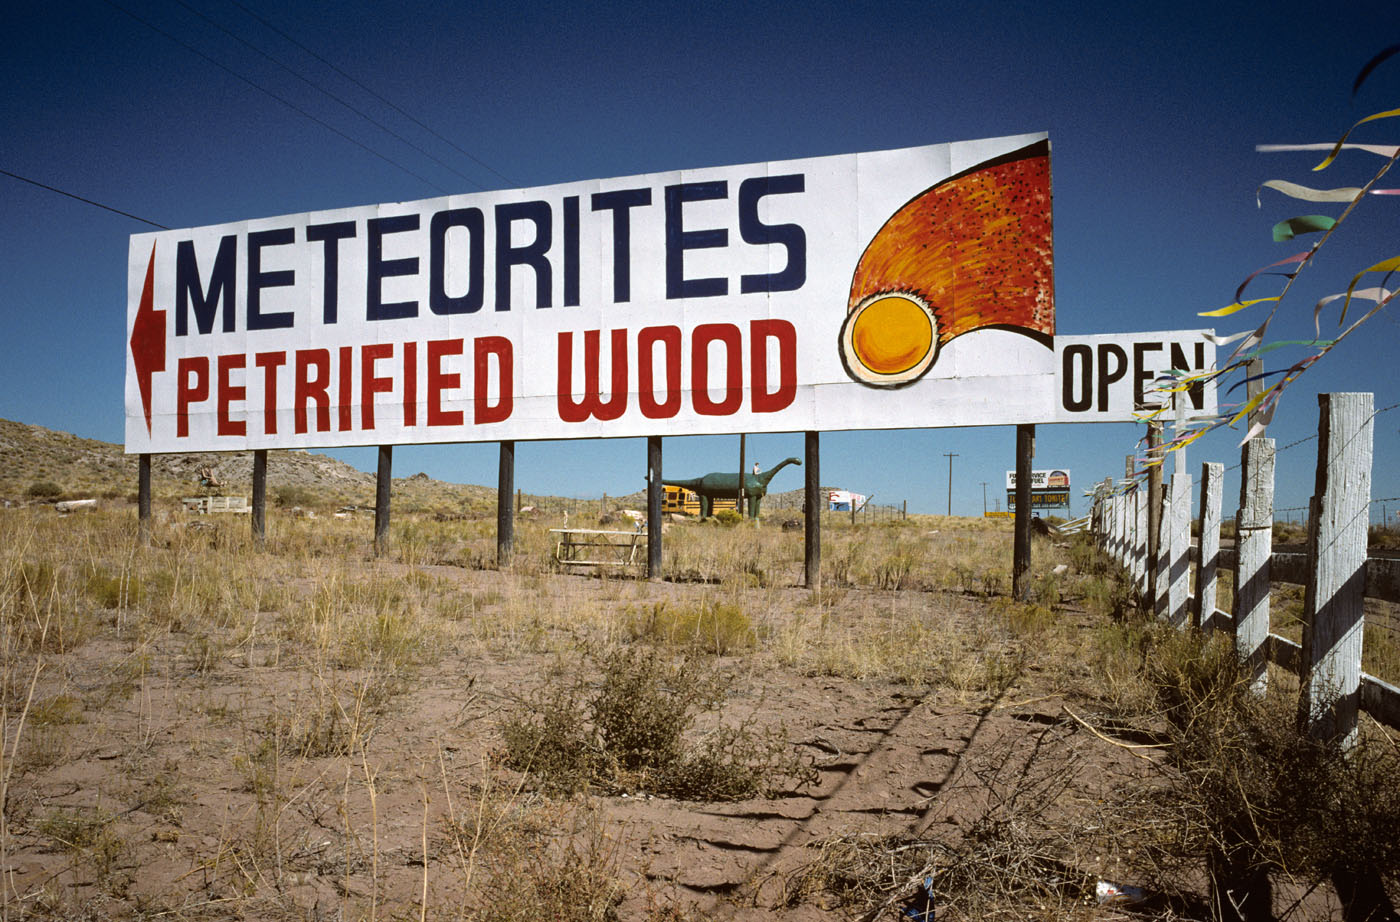 Stewart's Petrified Wood, Holbrook, AZ